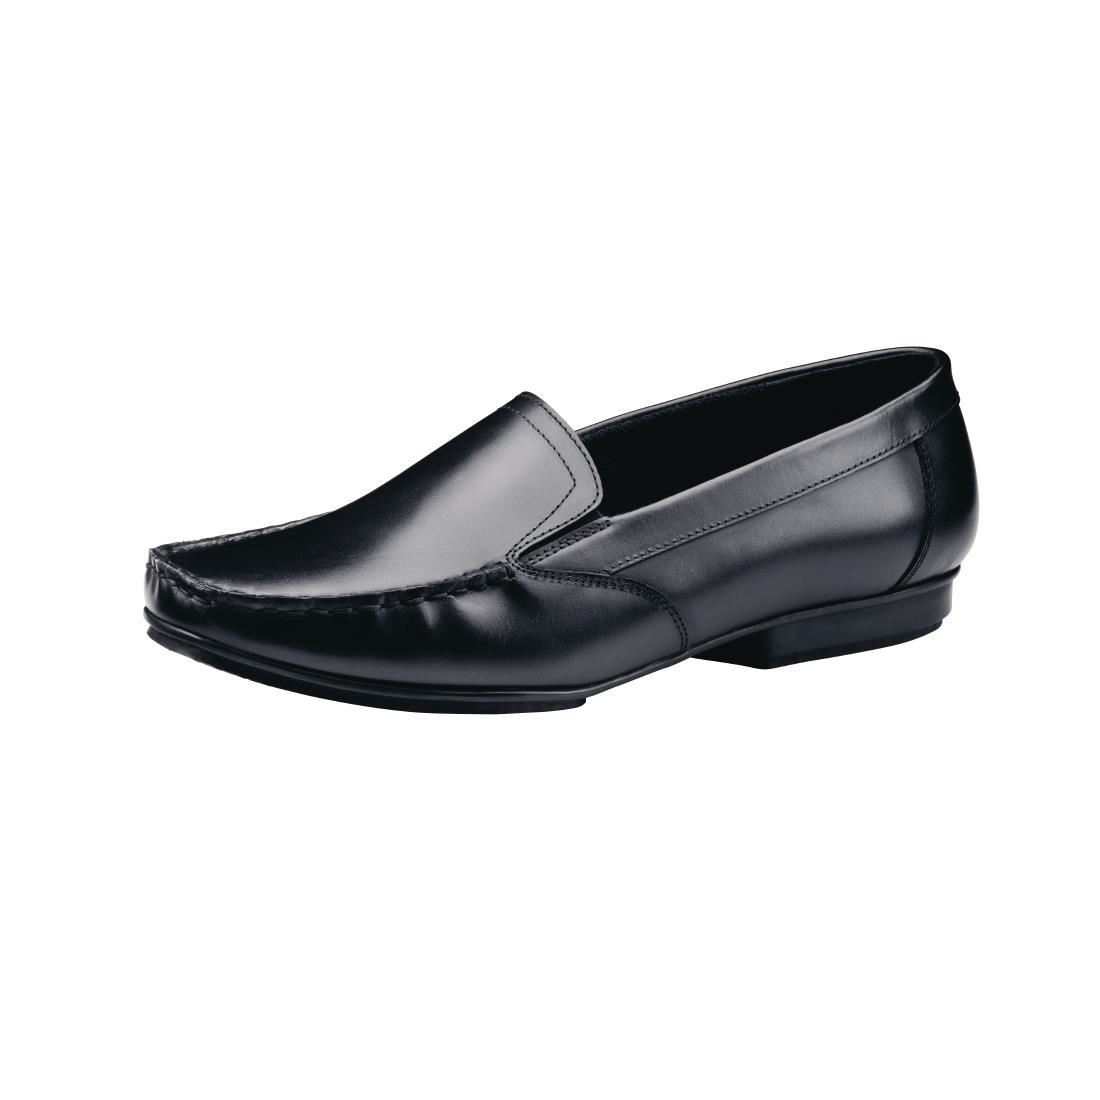 Shoes for Crews Jenni Slip On Dress Shoe Black Size 40 - BB587-40  - 1